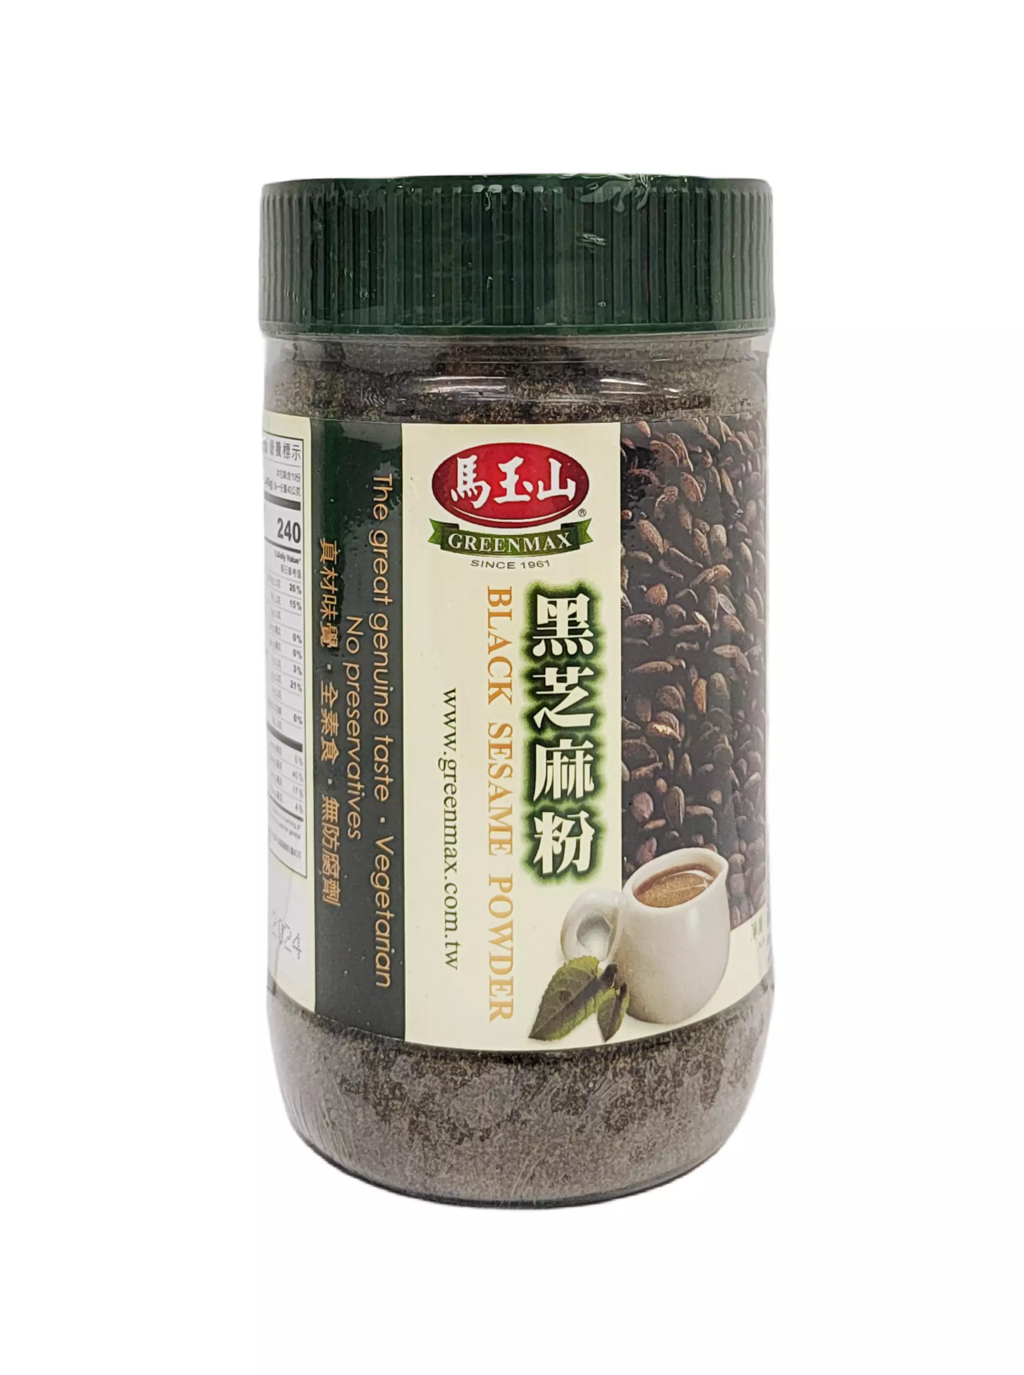 Black Sesame Powder 400g/Can Green Max Taiwan